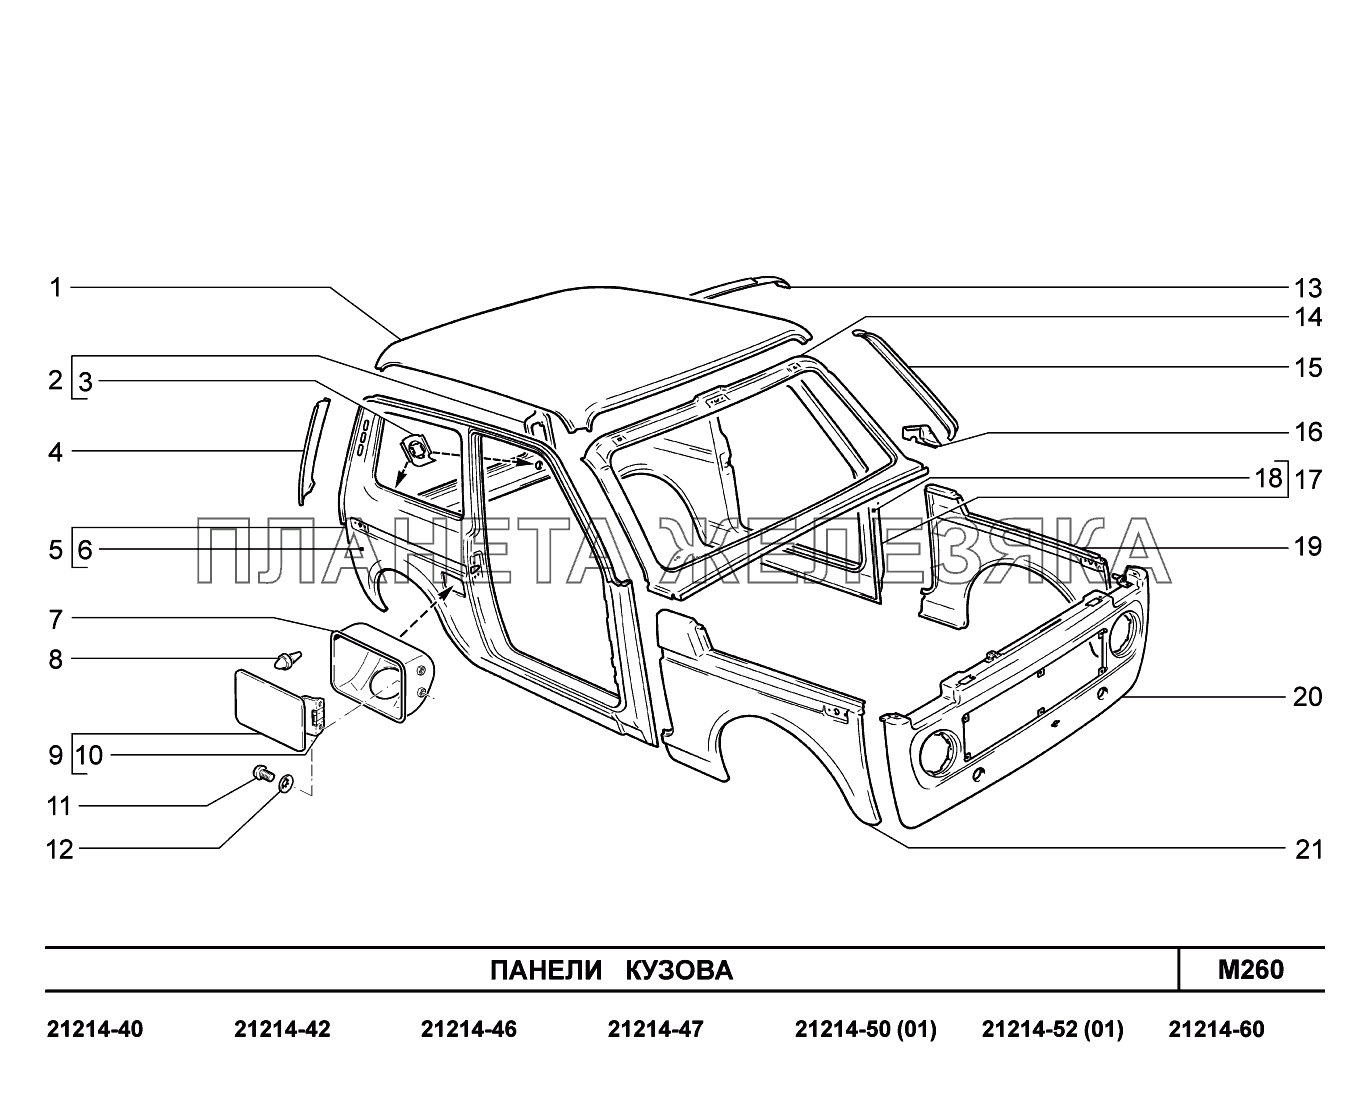 M260. Панели кузова Lada 4x4 Urban